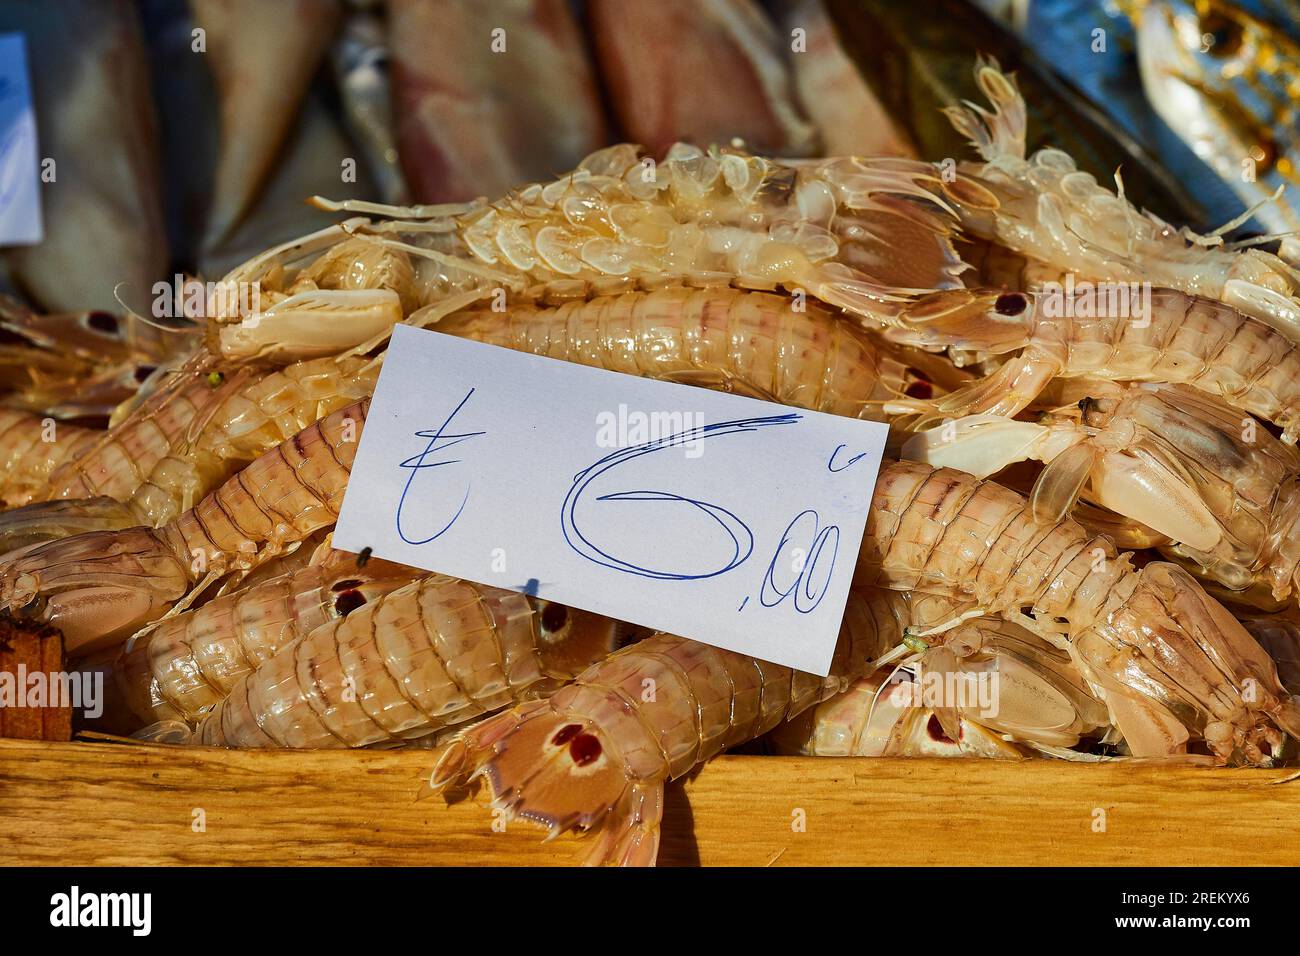 Crevettes couchées dans un tas, étiquette de prix, détail, marché aux poissons, vieille ville, Catane, côte est, Sicile, Italie Banque D'Images